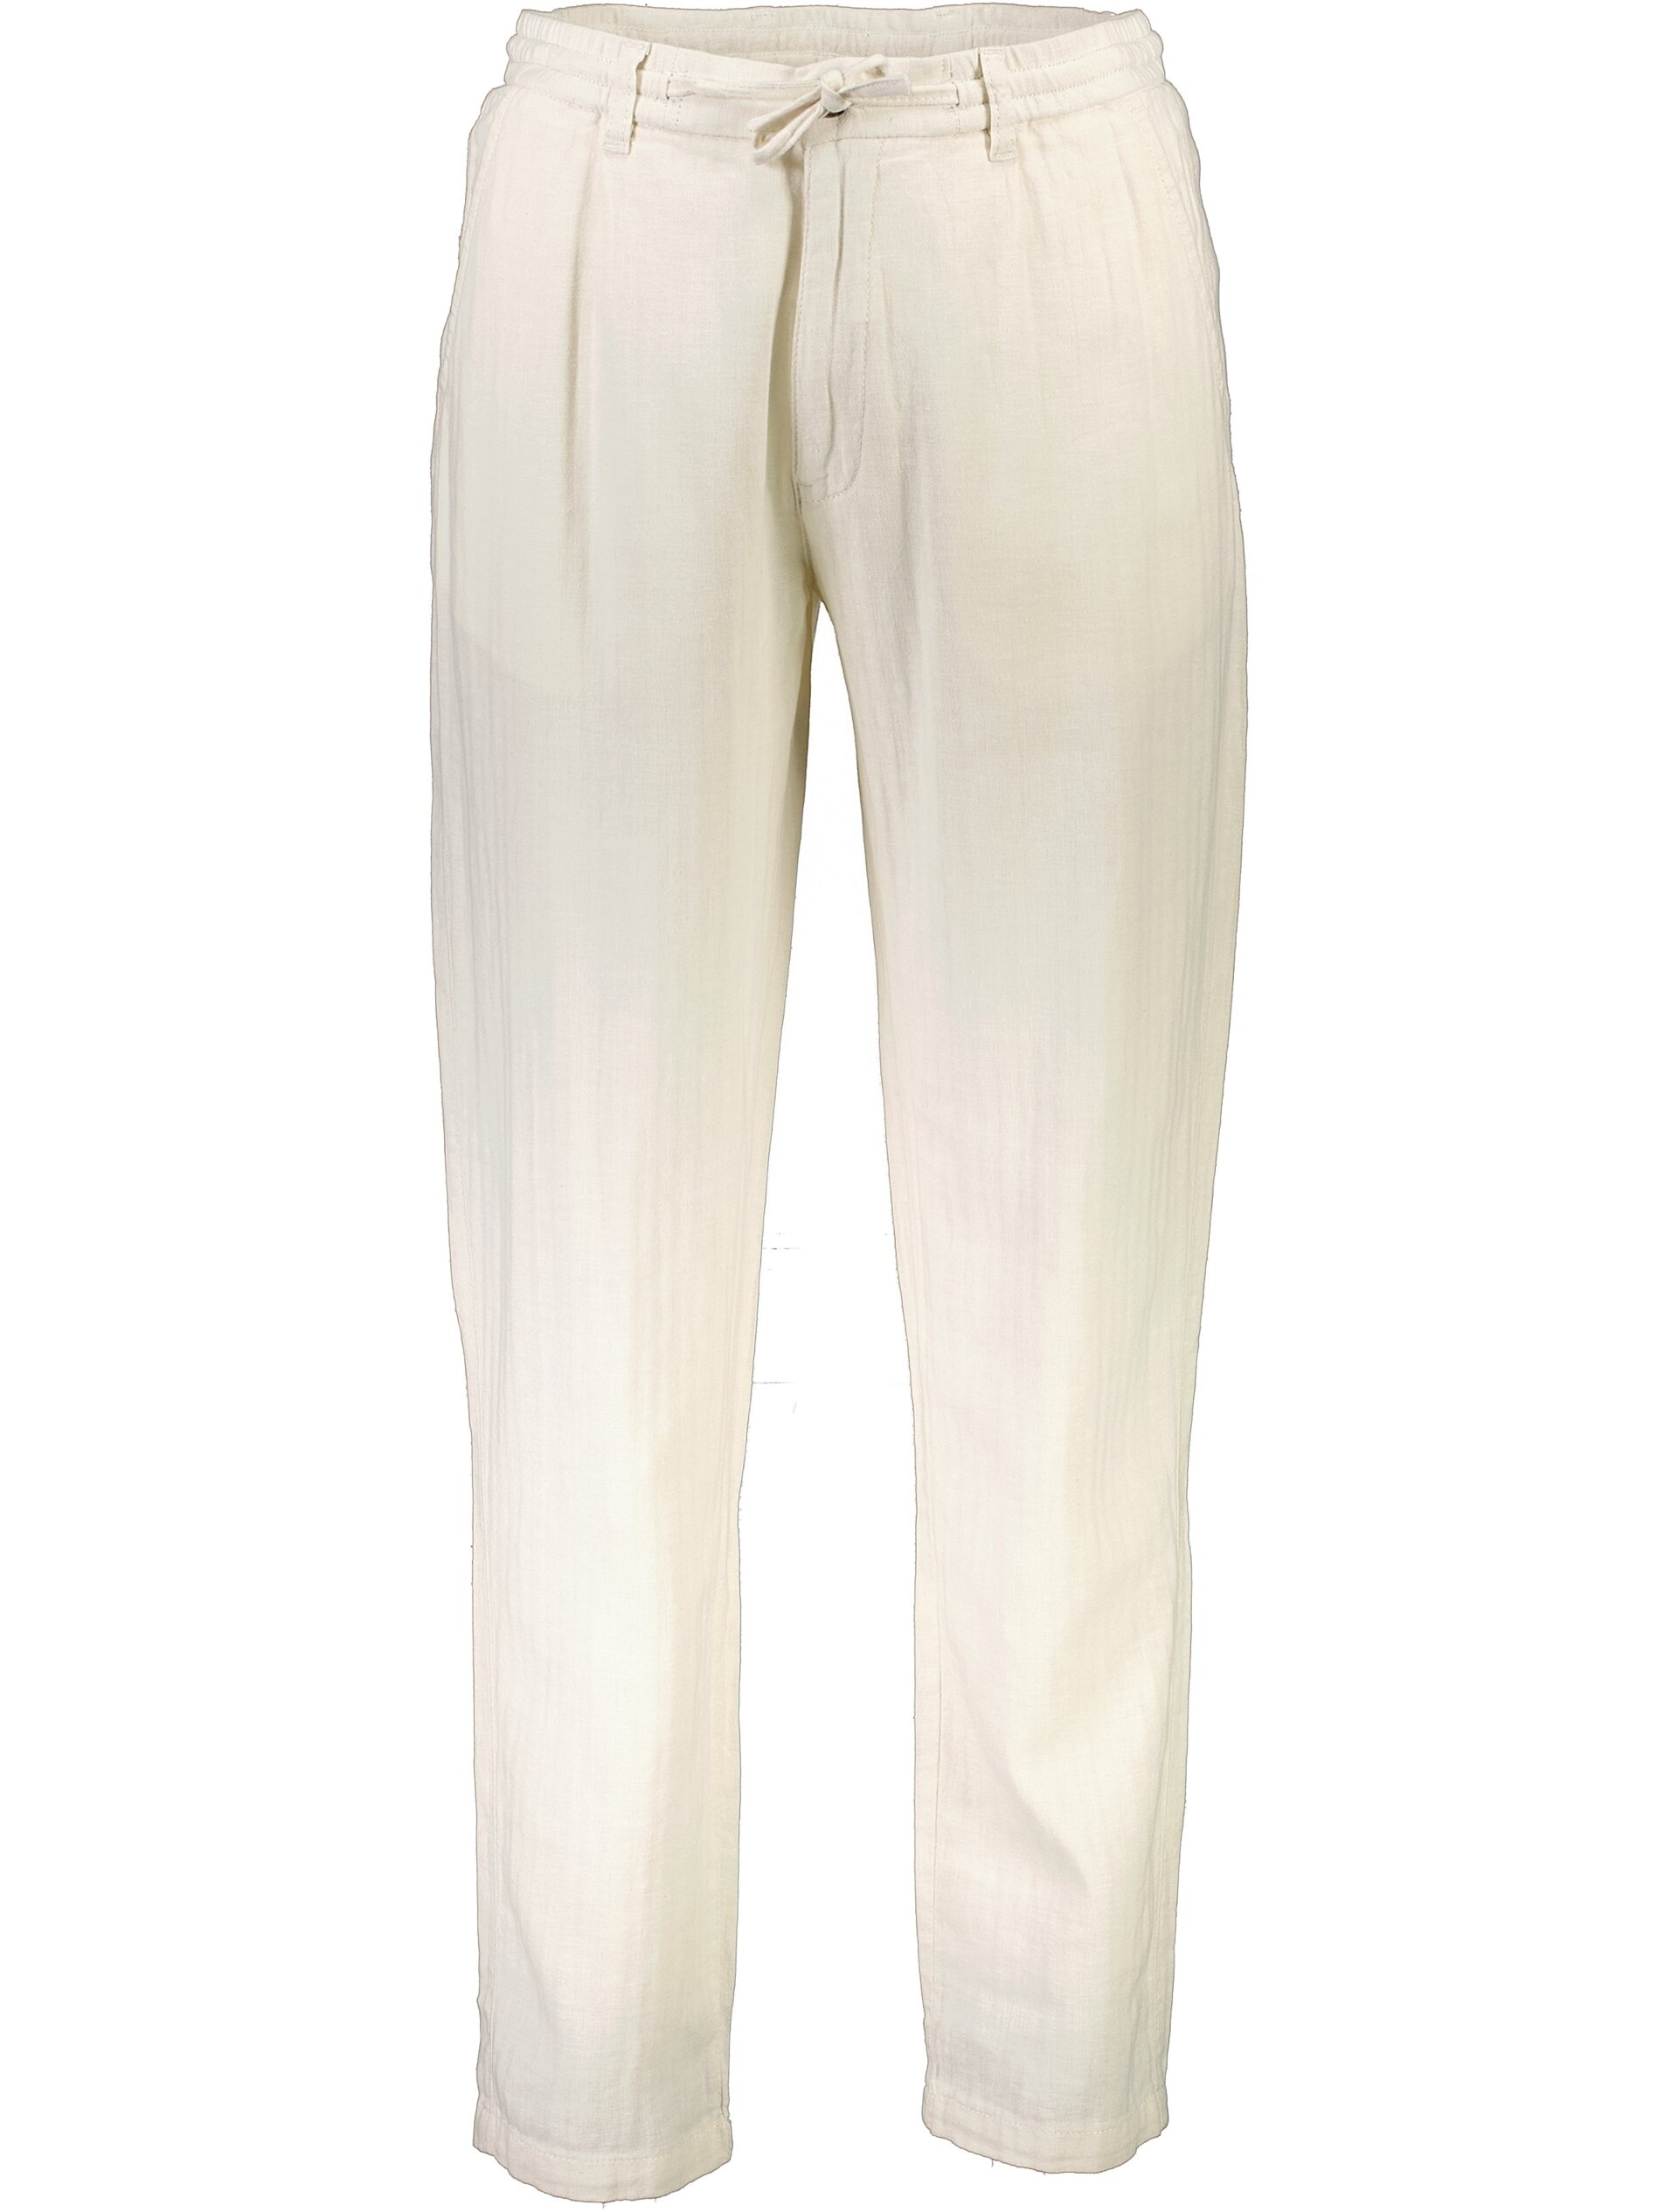 Lindbergh Linen pants white / optical white